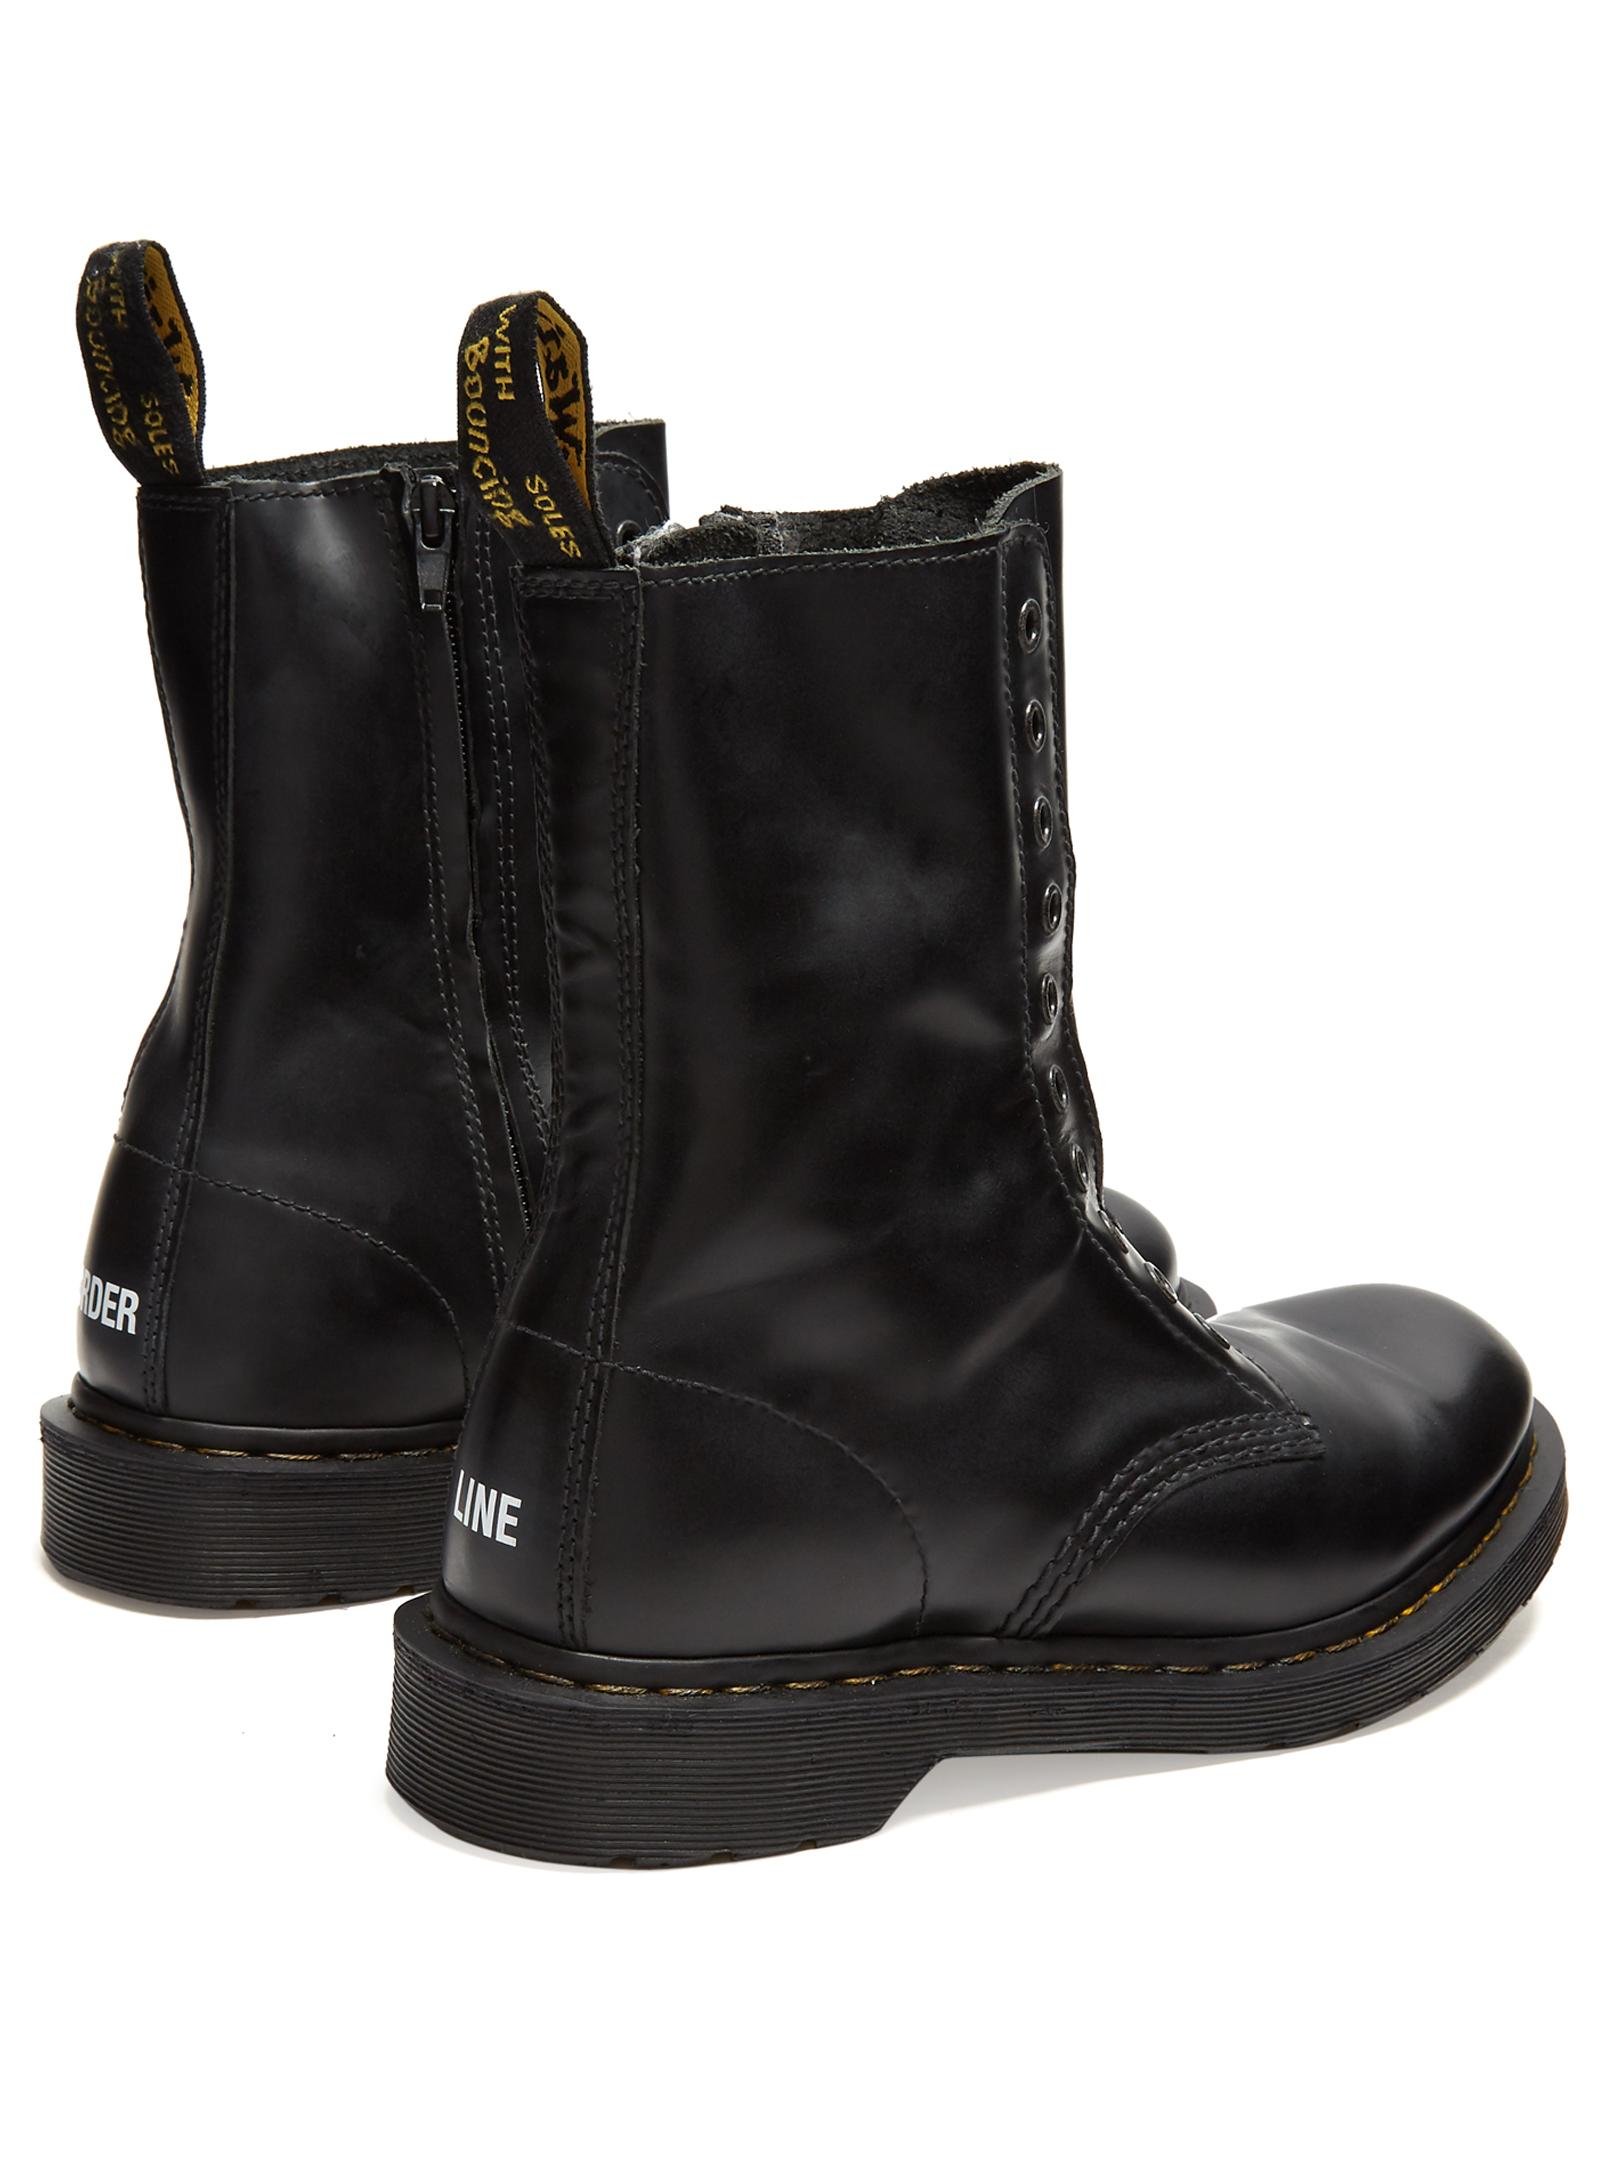 Vetements X Dr. Martens Boderline Leather Boots in Black for Men 